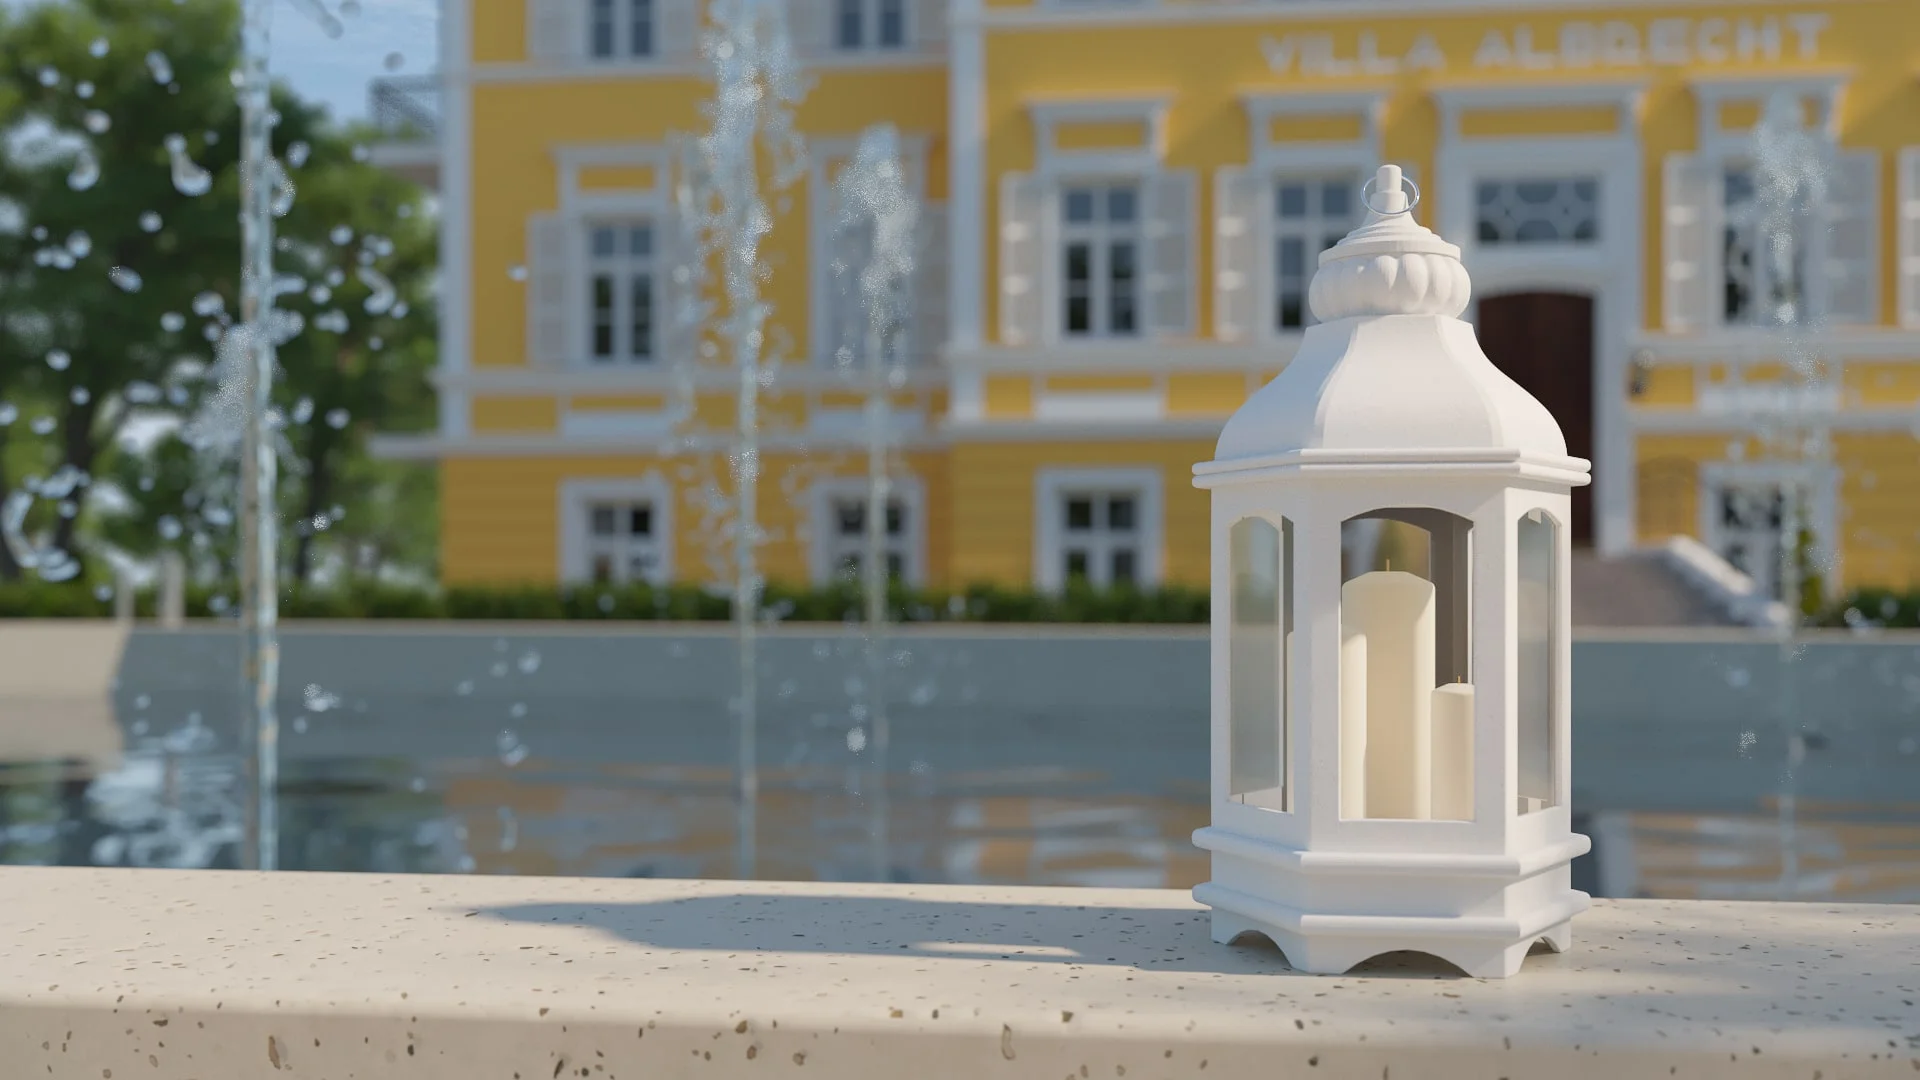 Architectural visualization. Villa Albrecht. Fountain